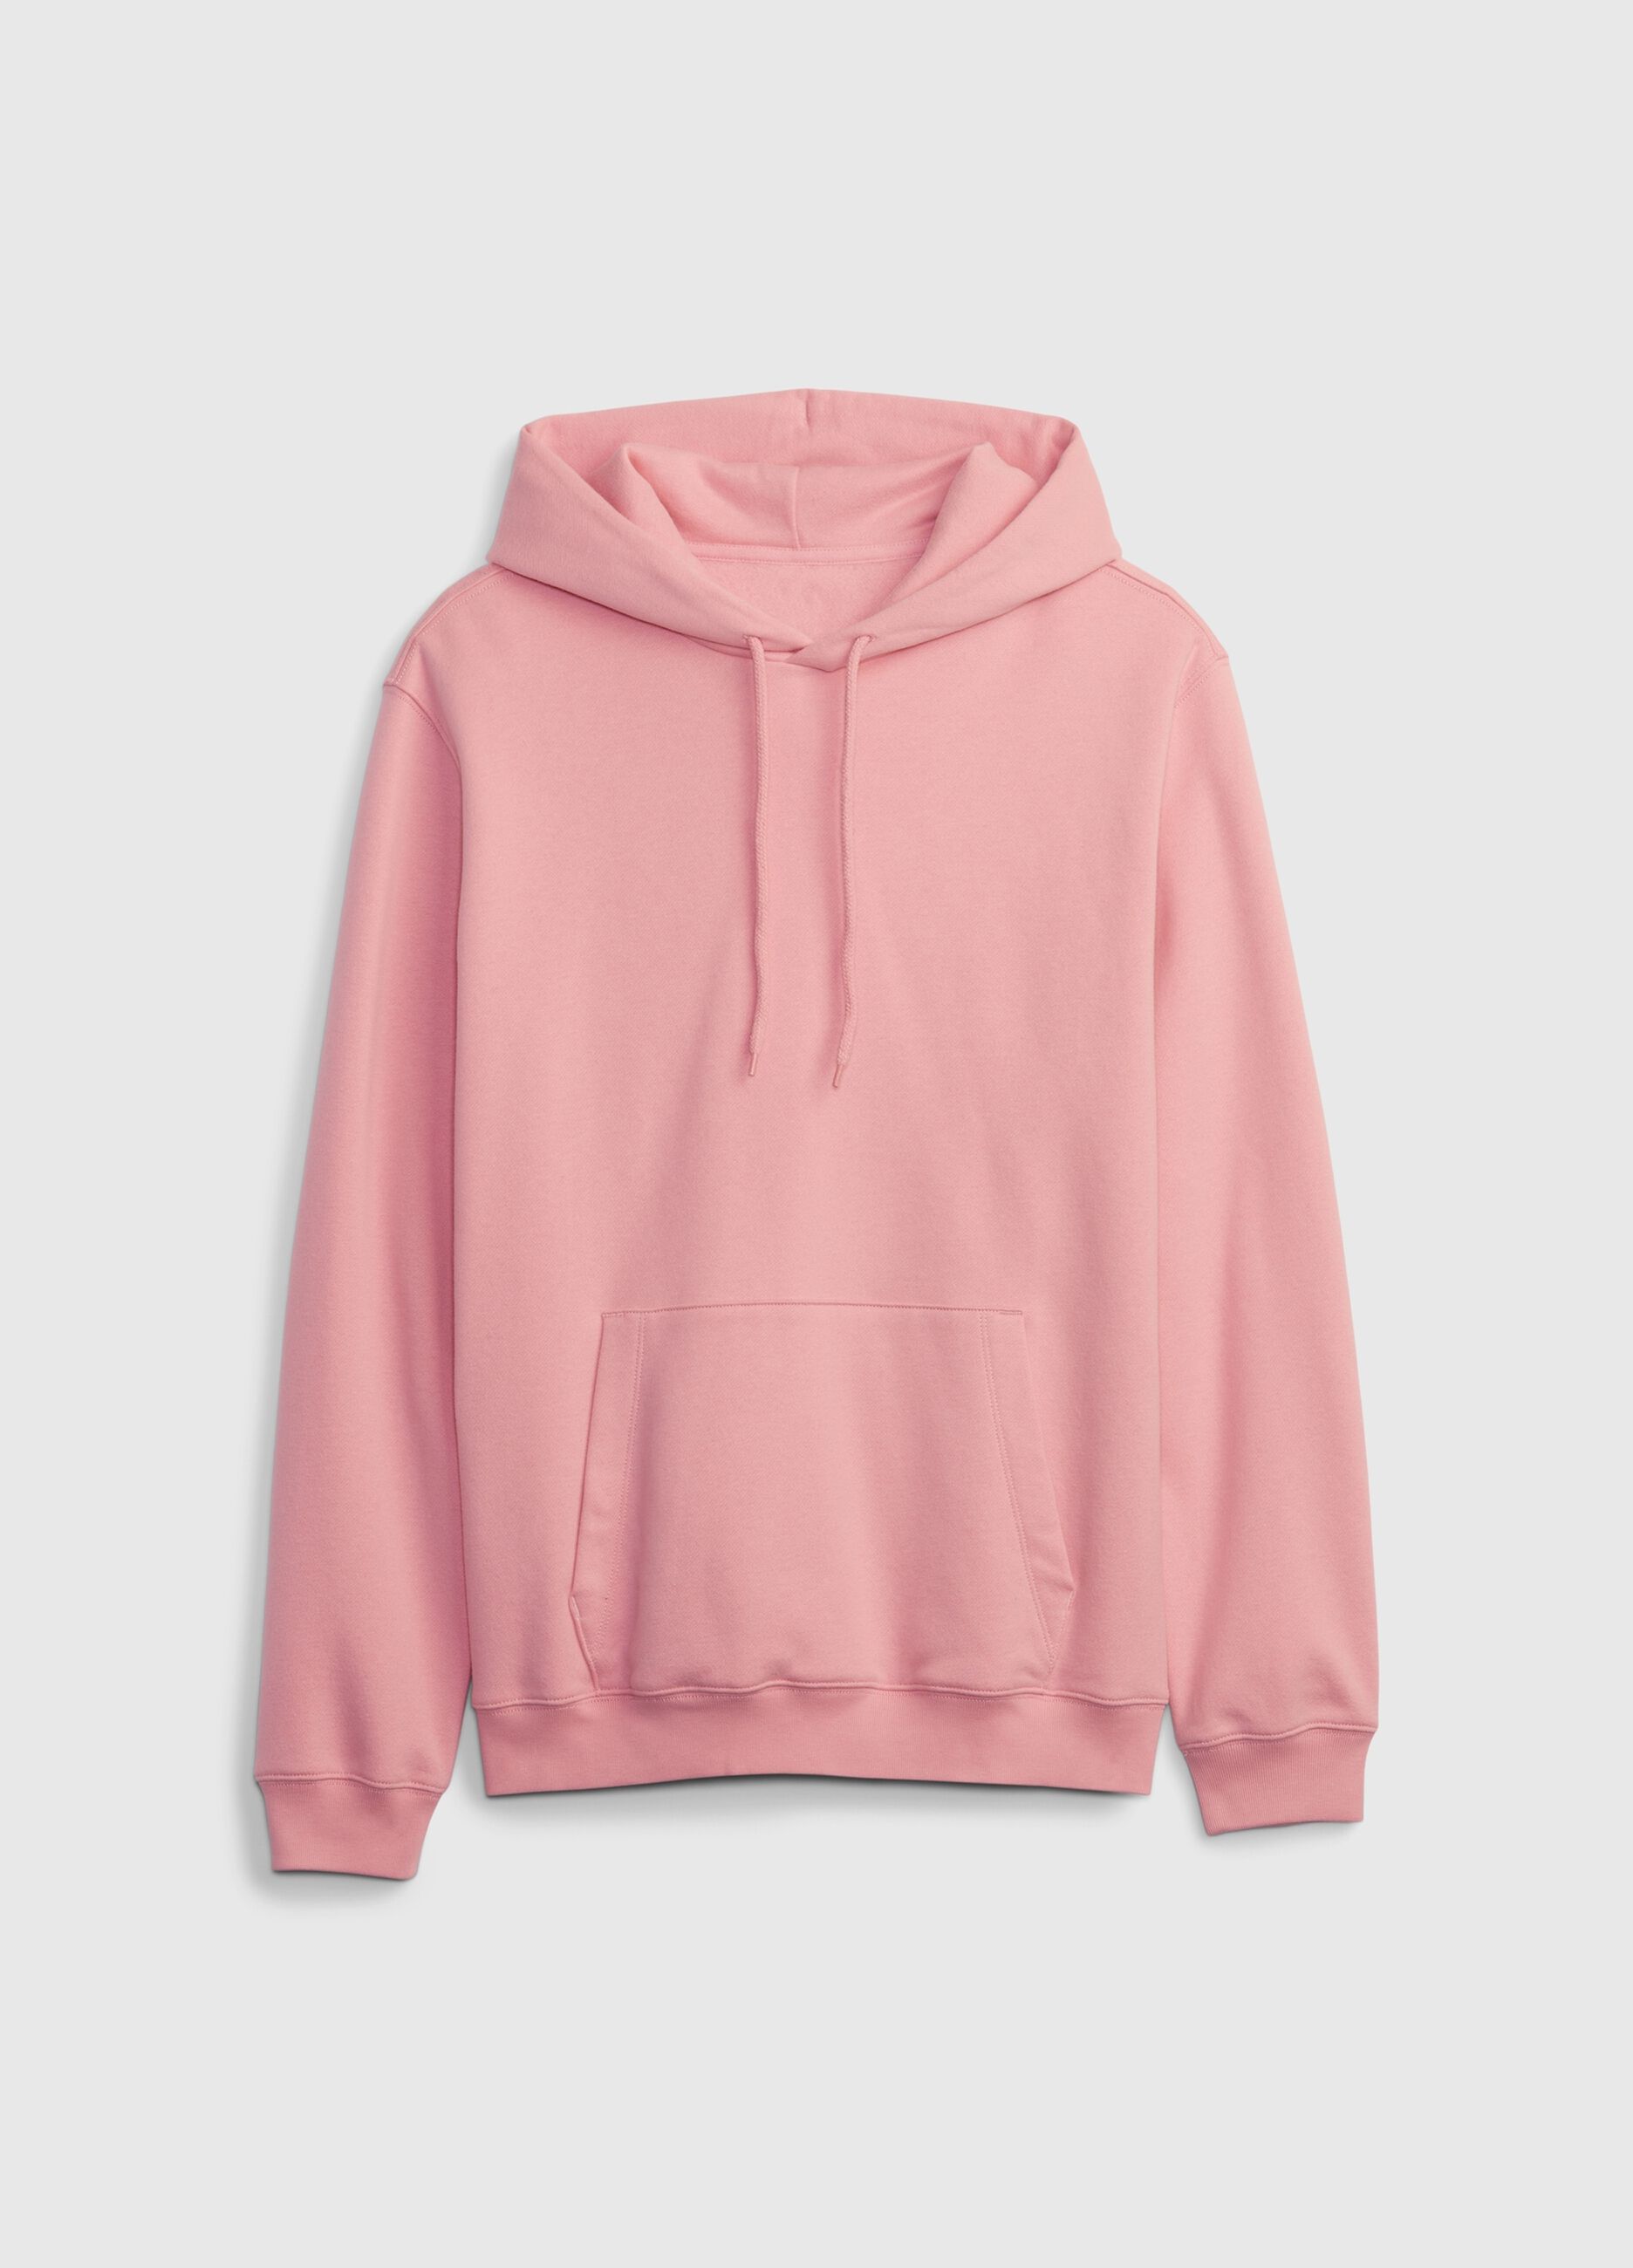 Sweatshirt with hood and pocket_3